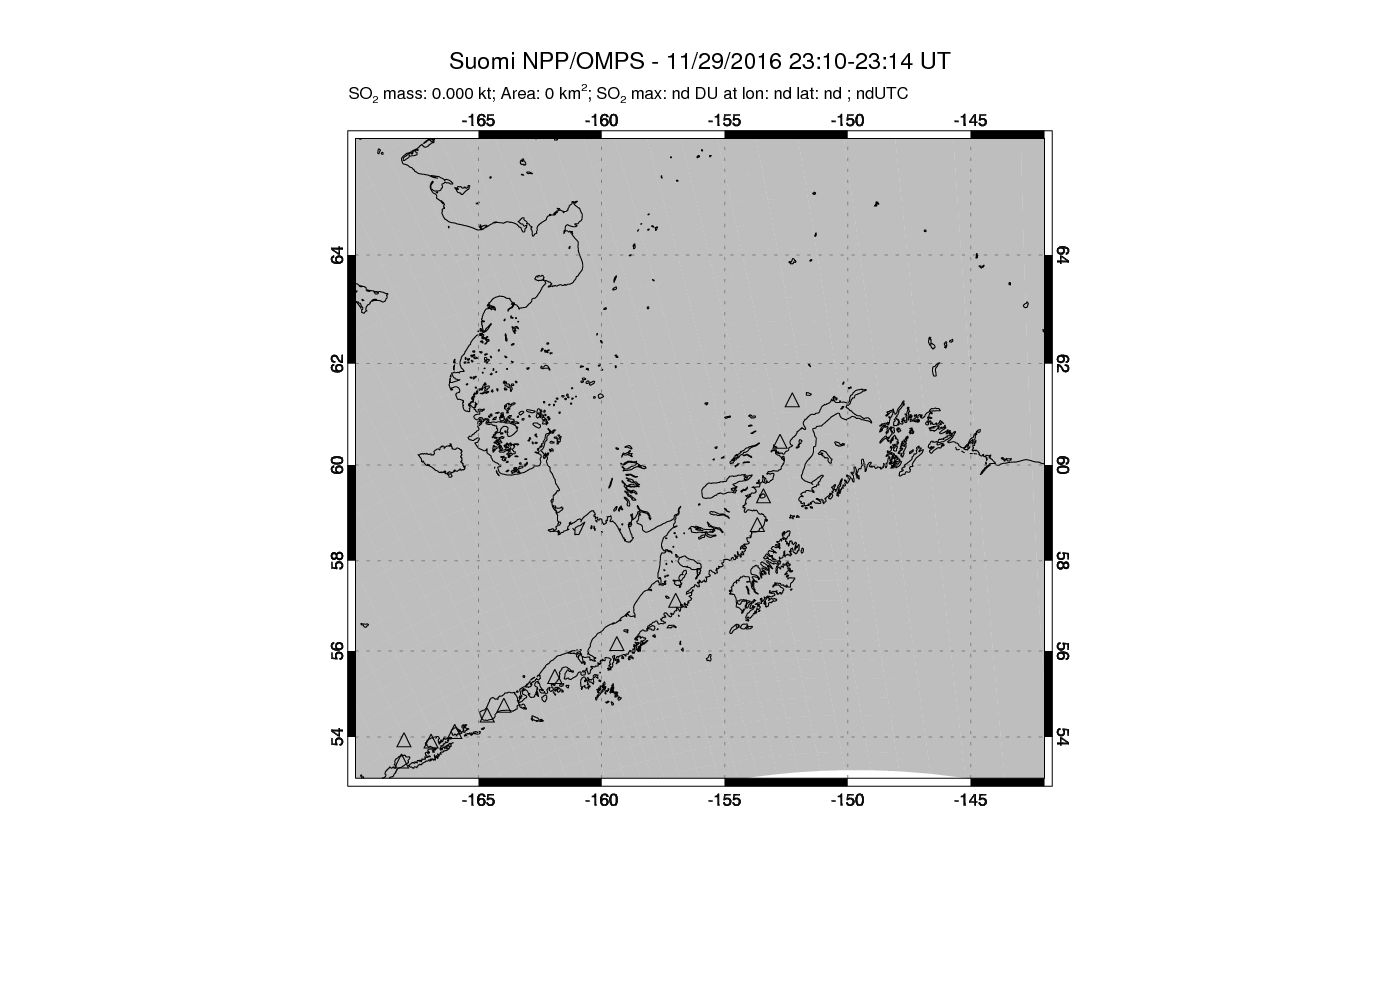 A sulfur dioxide image over Alaska, USA on Nov 29, 2016.